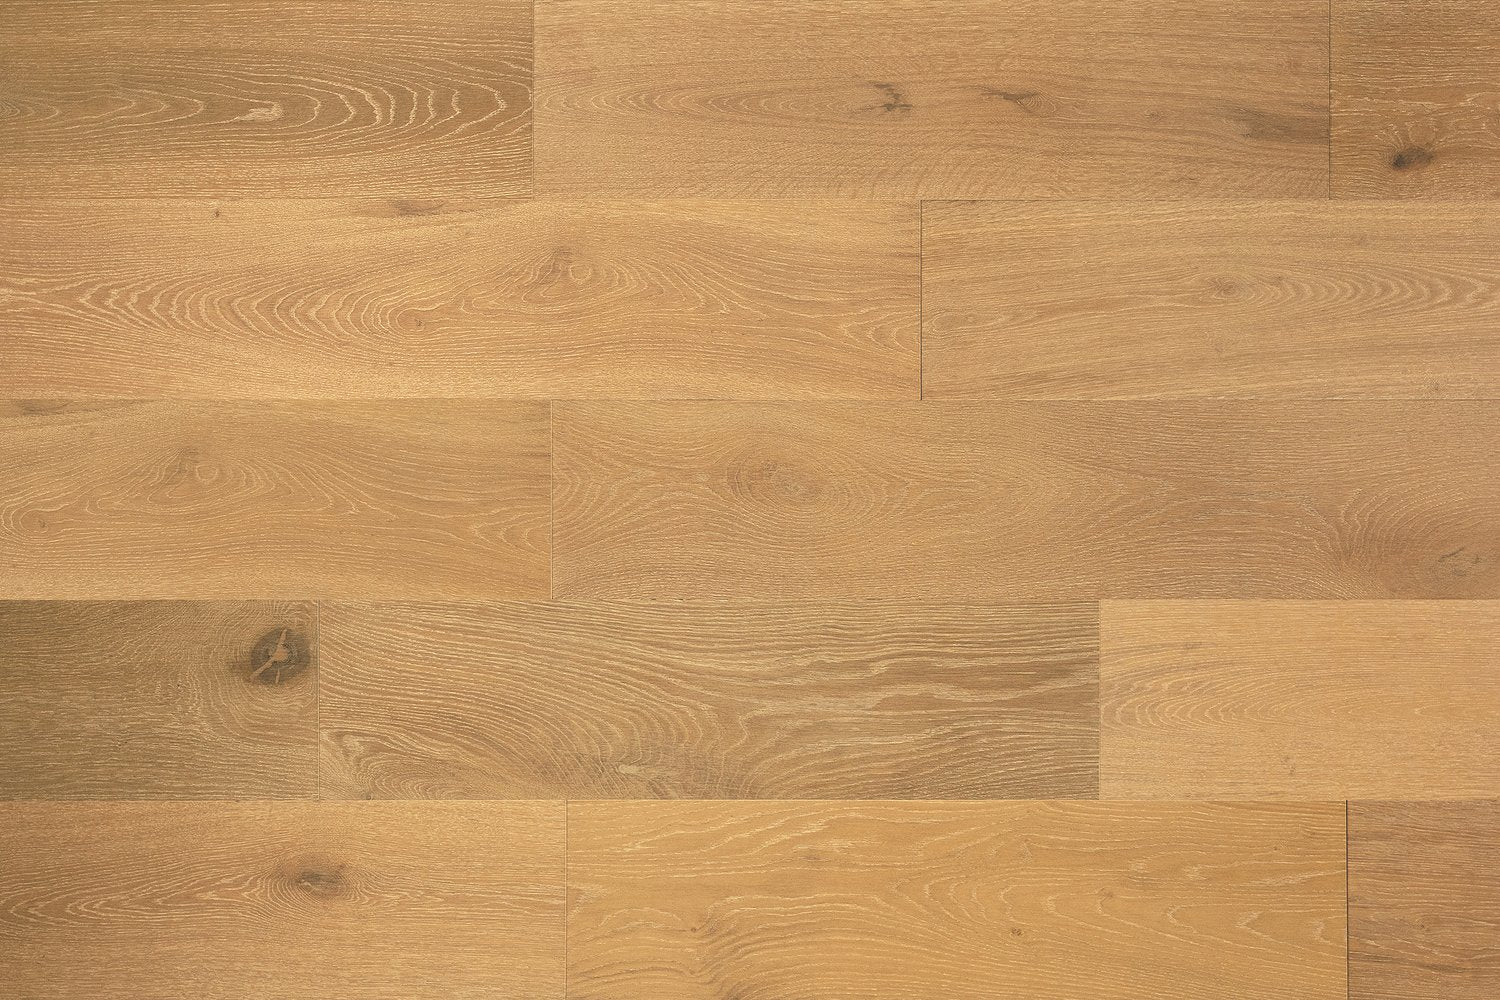 surface group artisan en bois brittany stonegate white oak engineered hardwood flooring plank straight.jpg